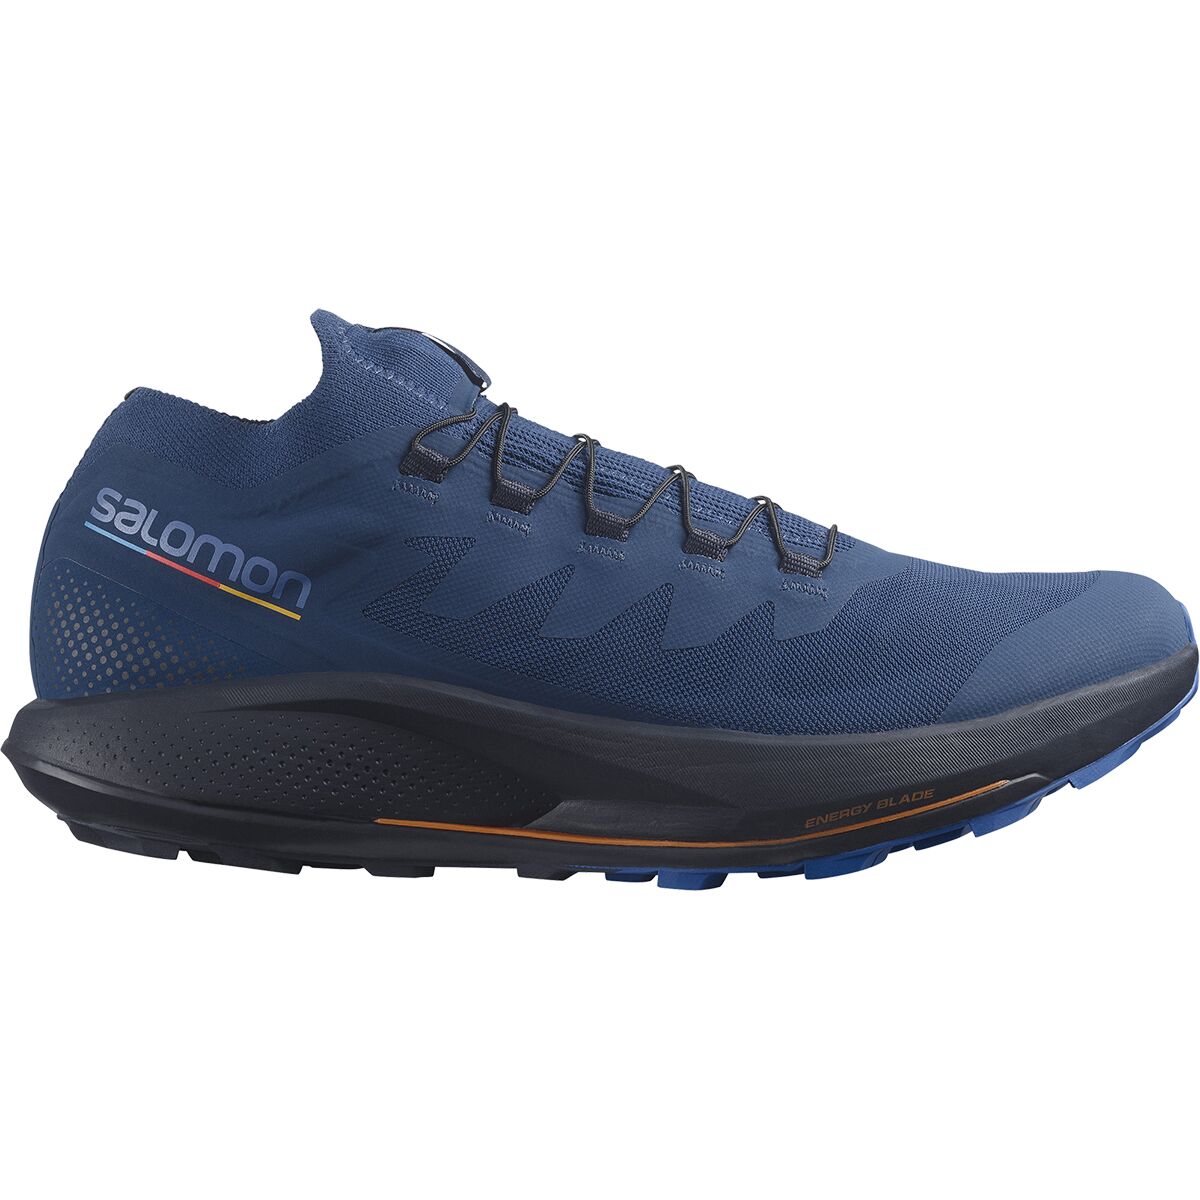 Pulsar Pro Trail Running Shoe - Men